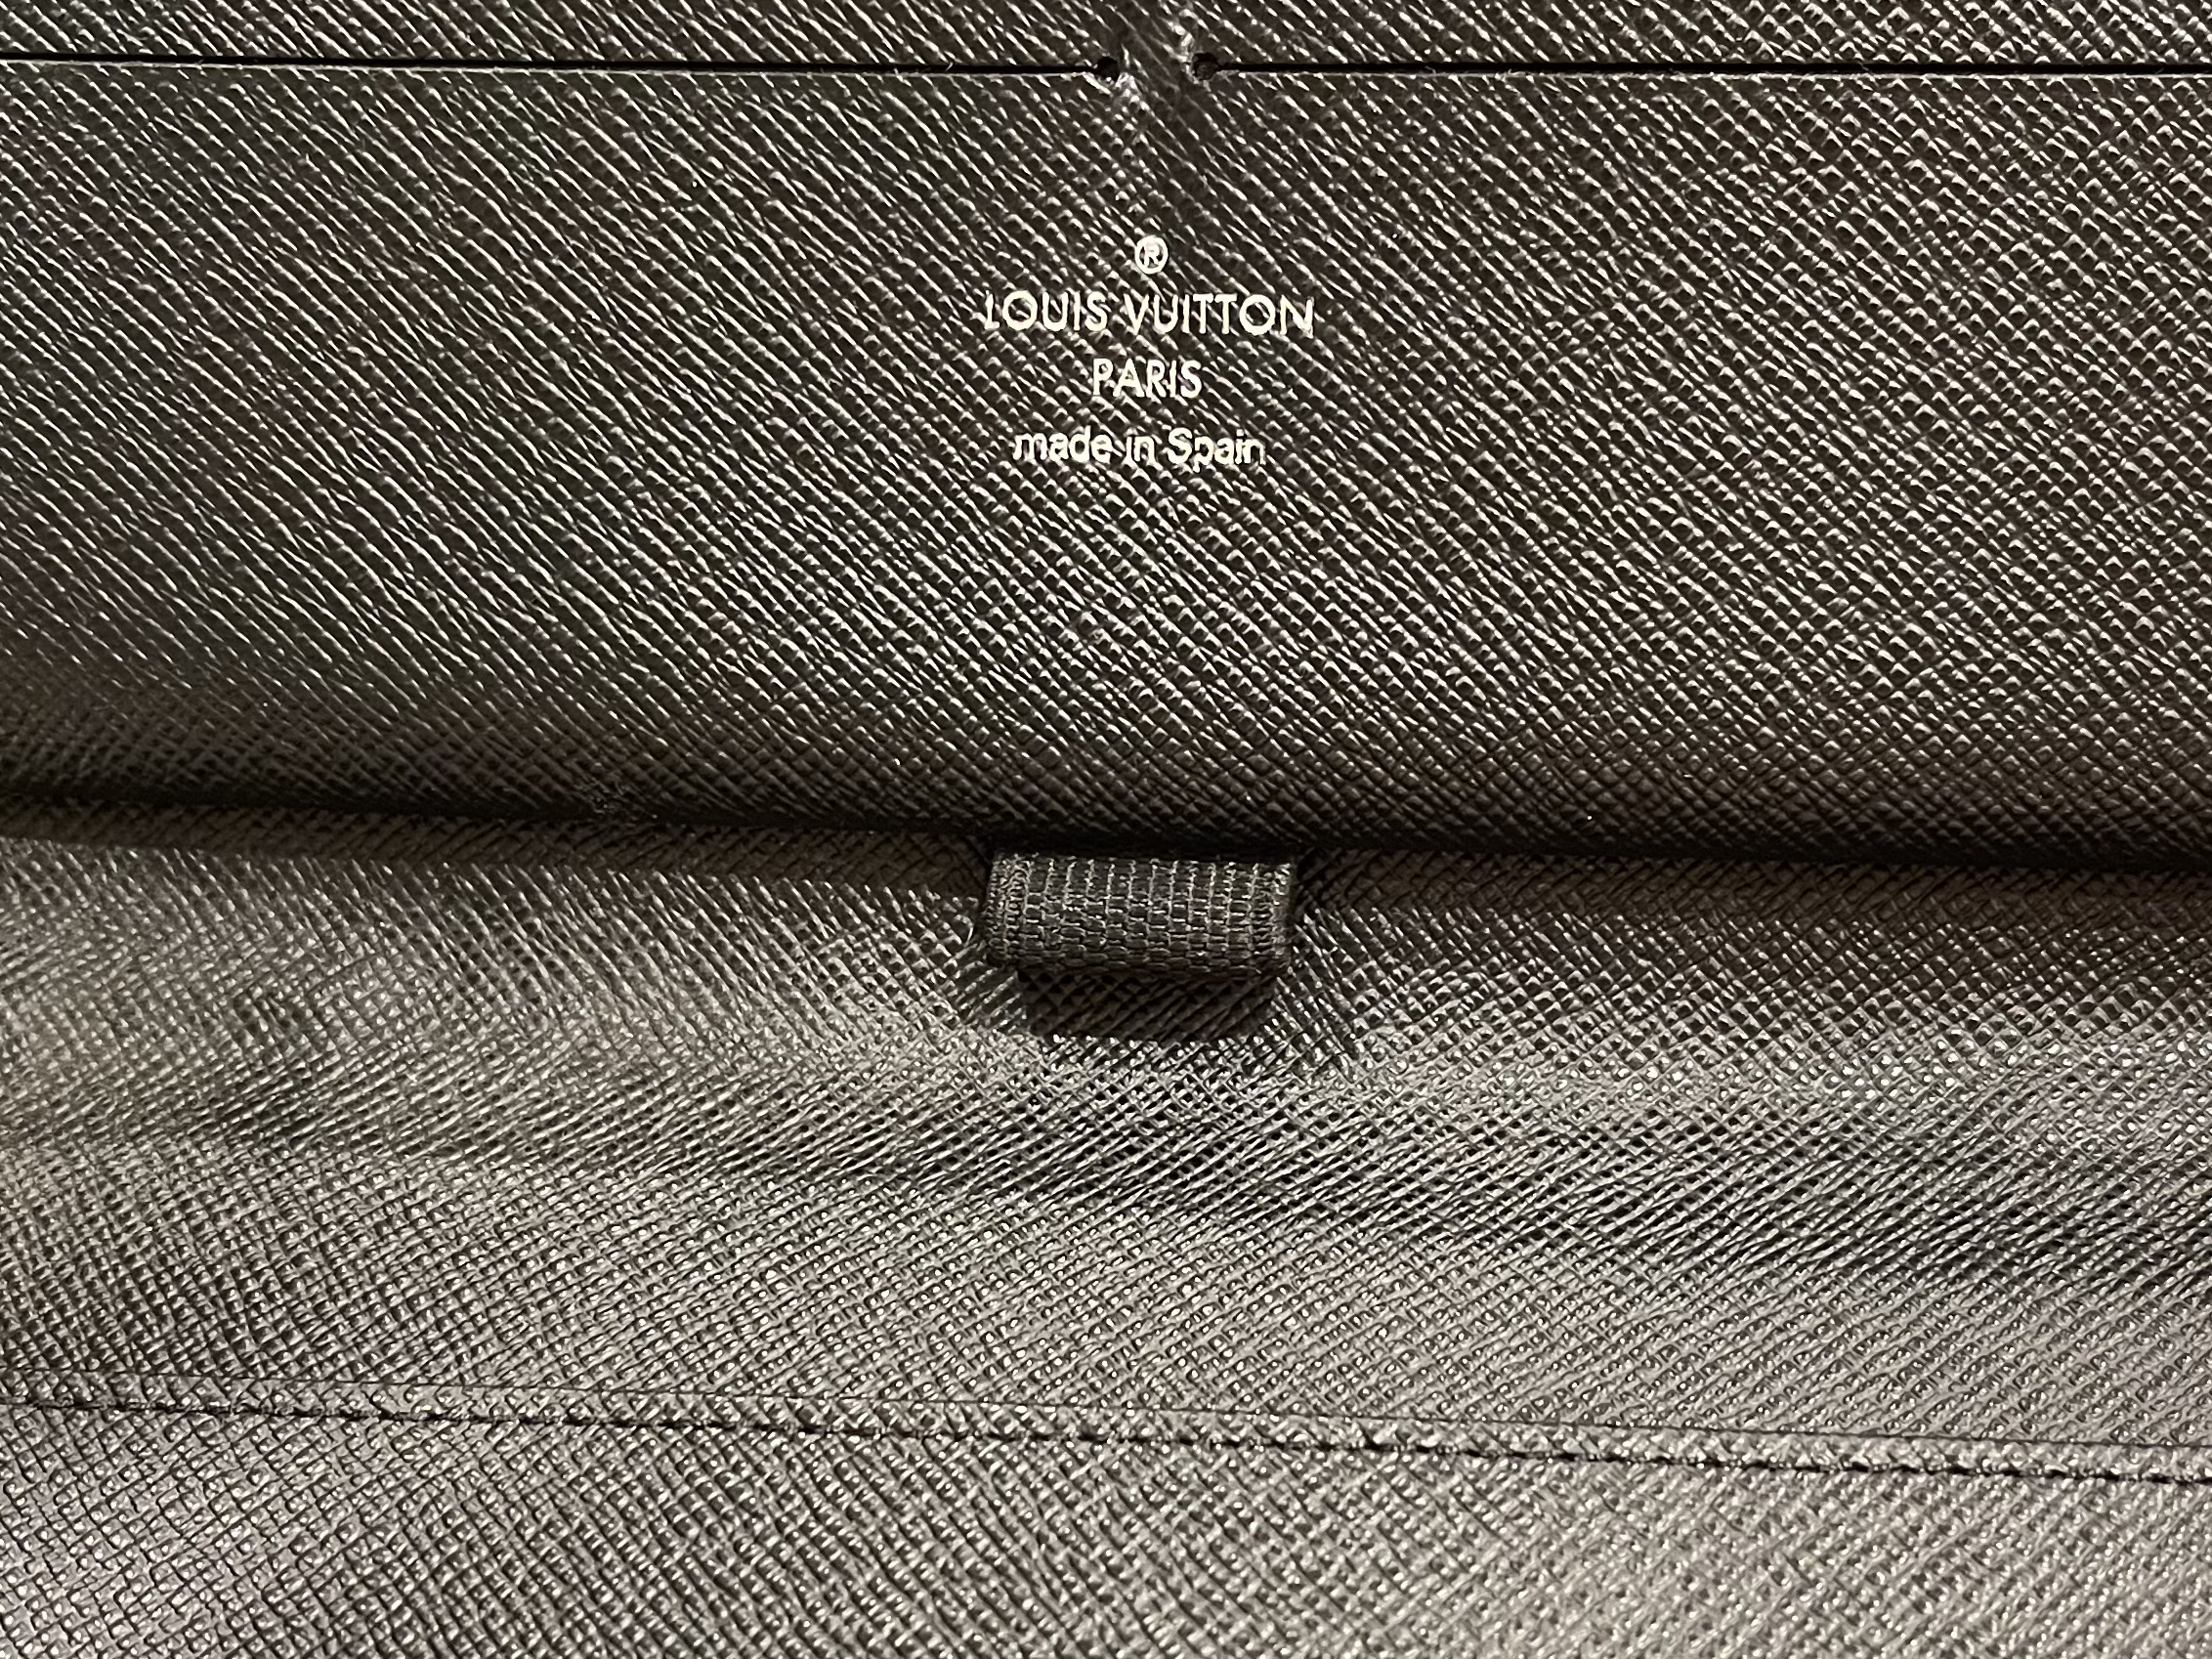 Louis Vuitton Damier Graphite Long Wallet 533240